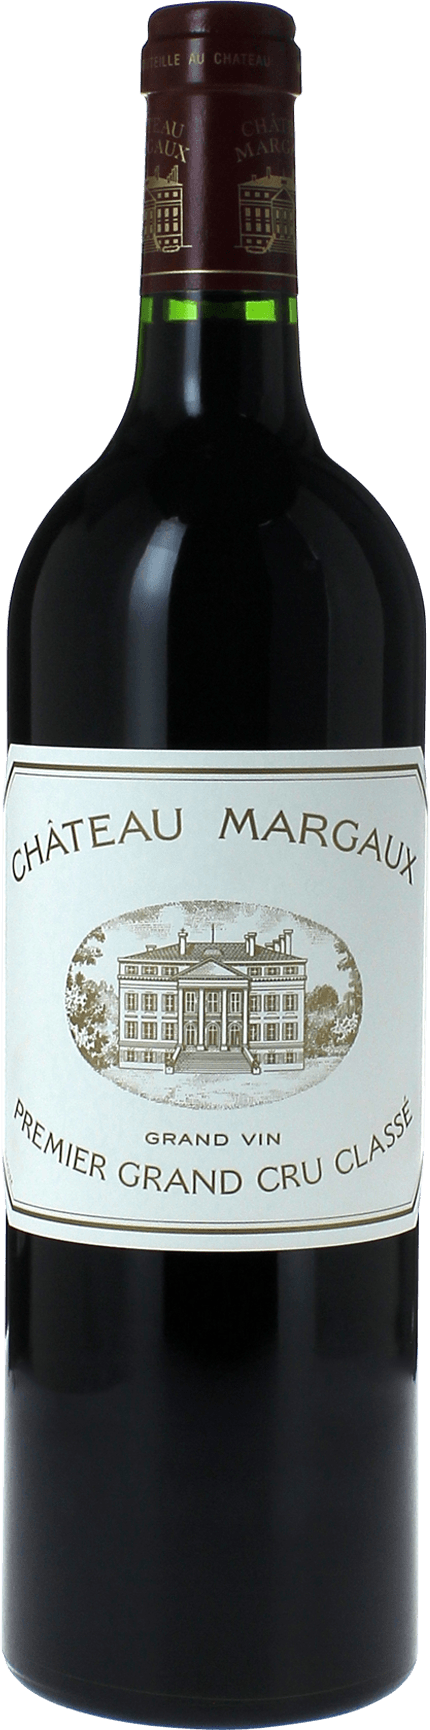 Margaux margaux 1986 1er Grand cru class Margaux, Bordeaux rouge